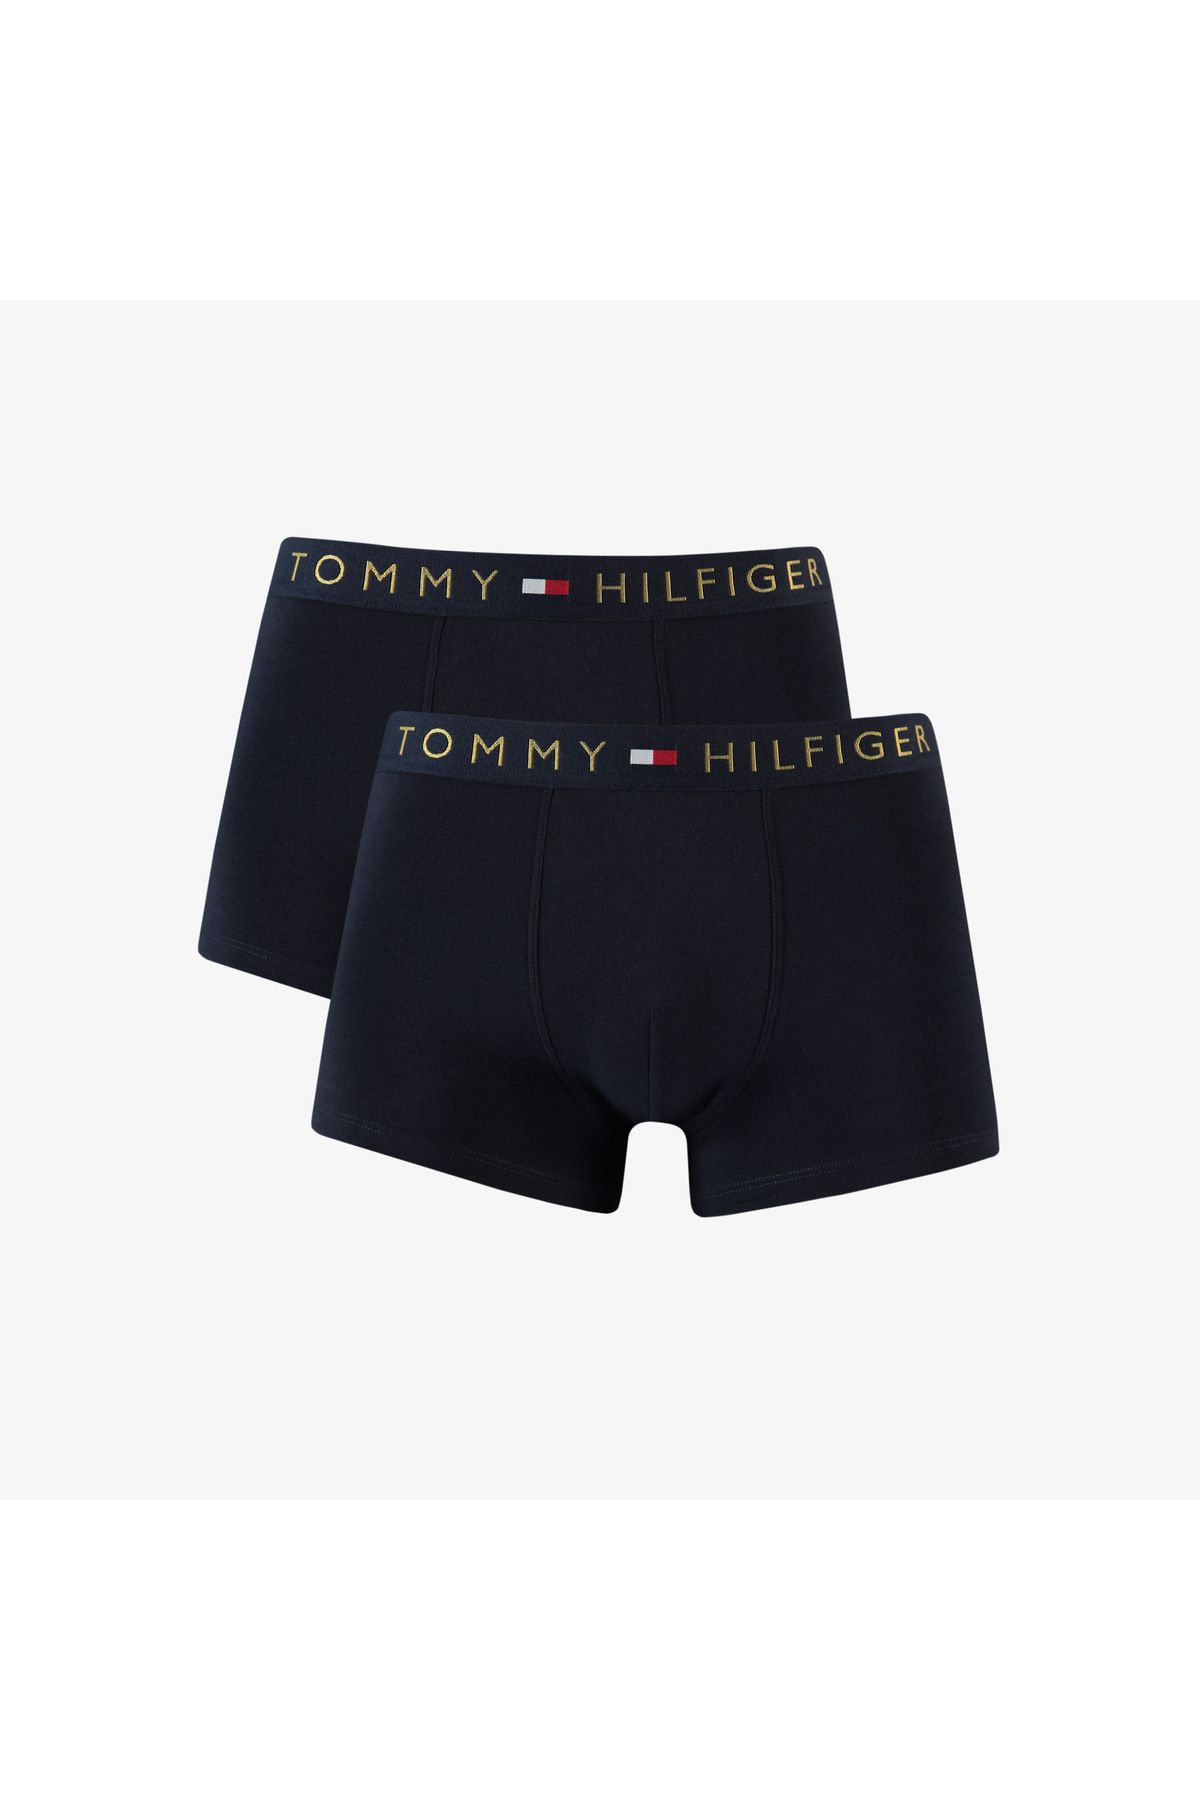 Tommy Hilfiger Underwear Th Original Gift Set Erkek Lacivert Boxer